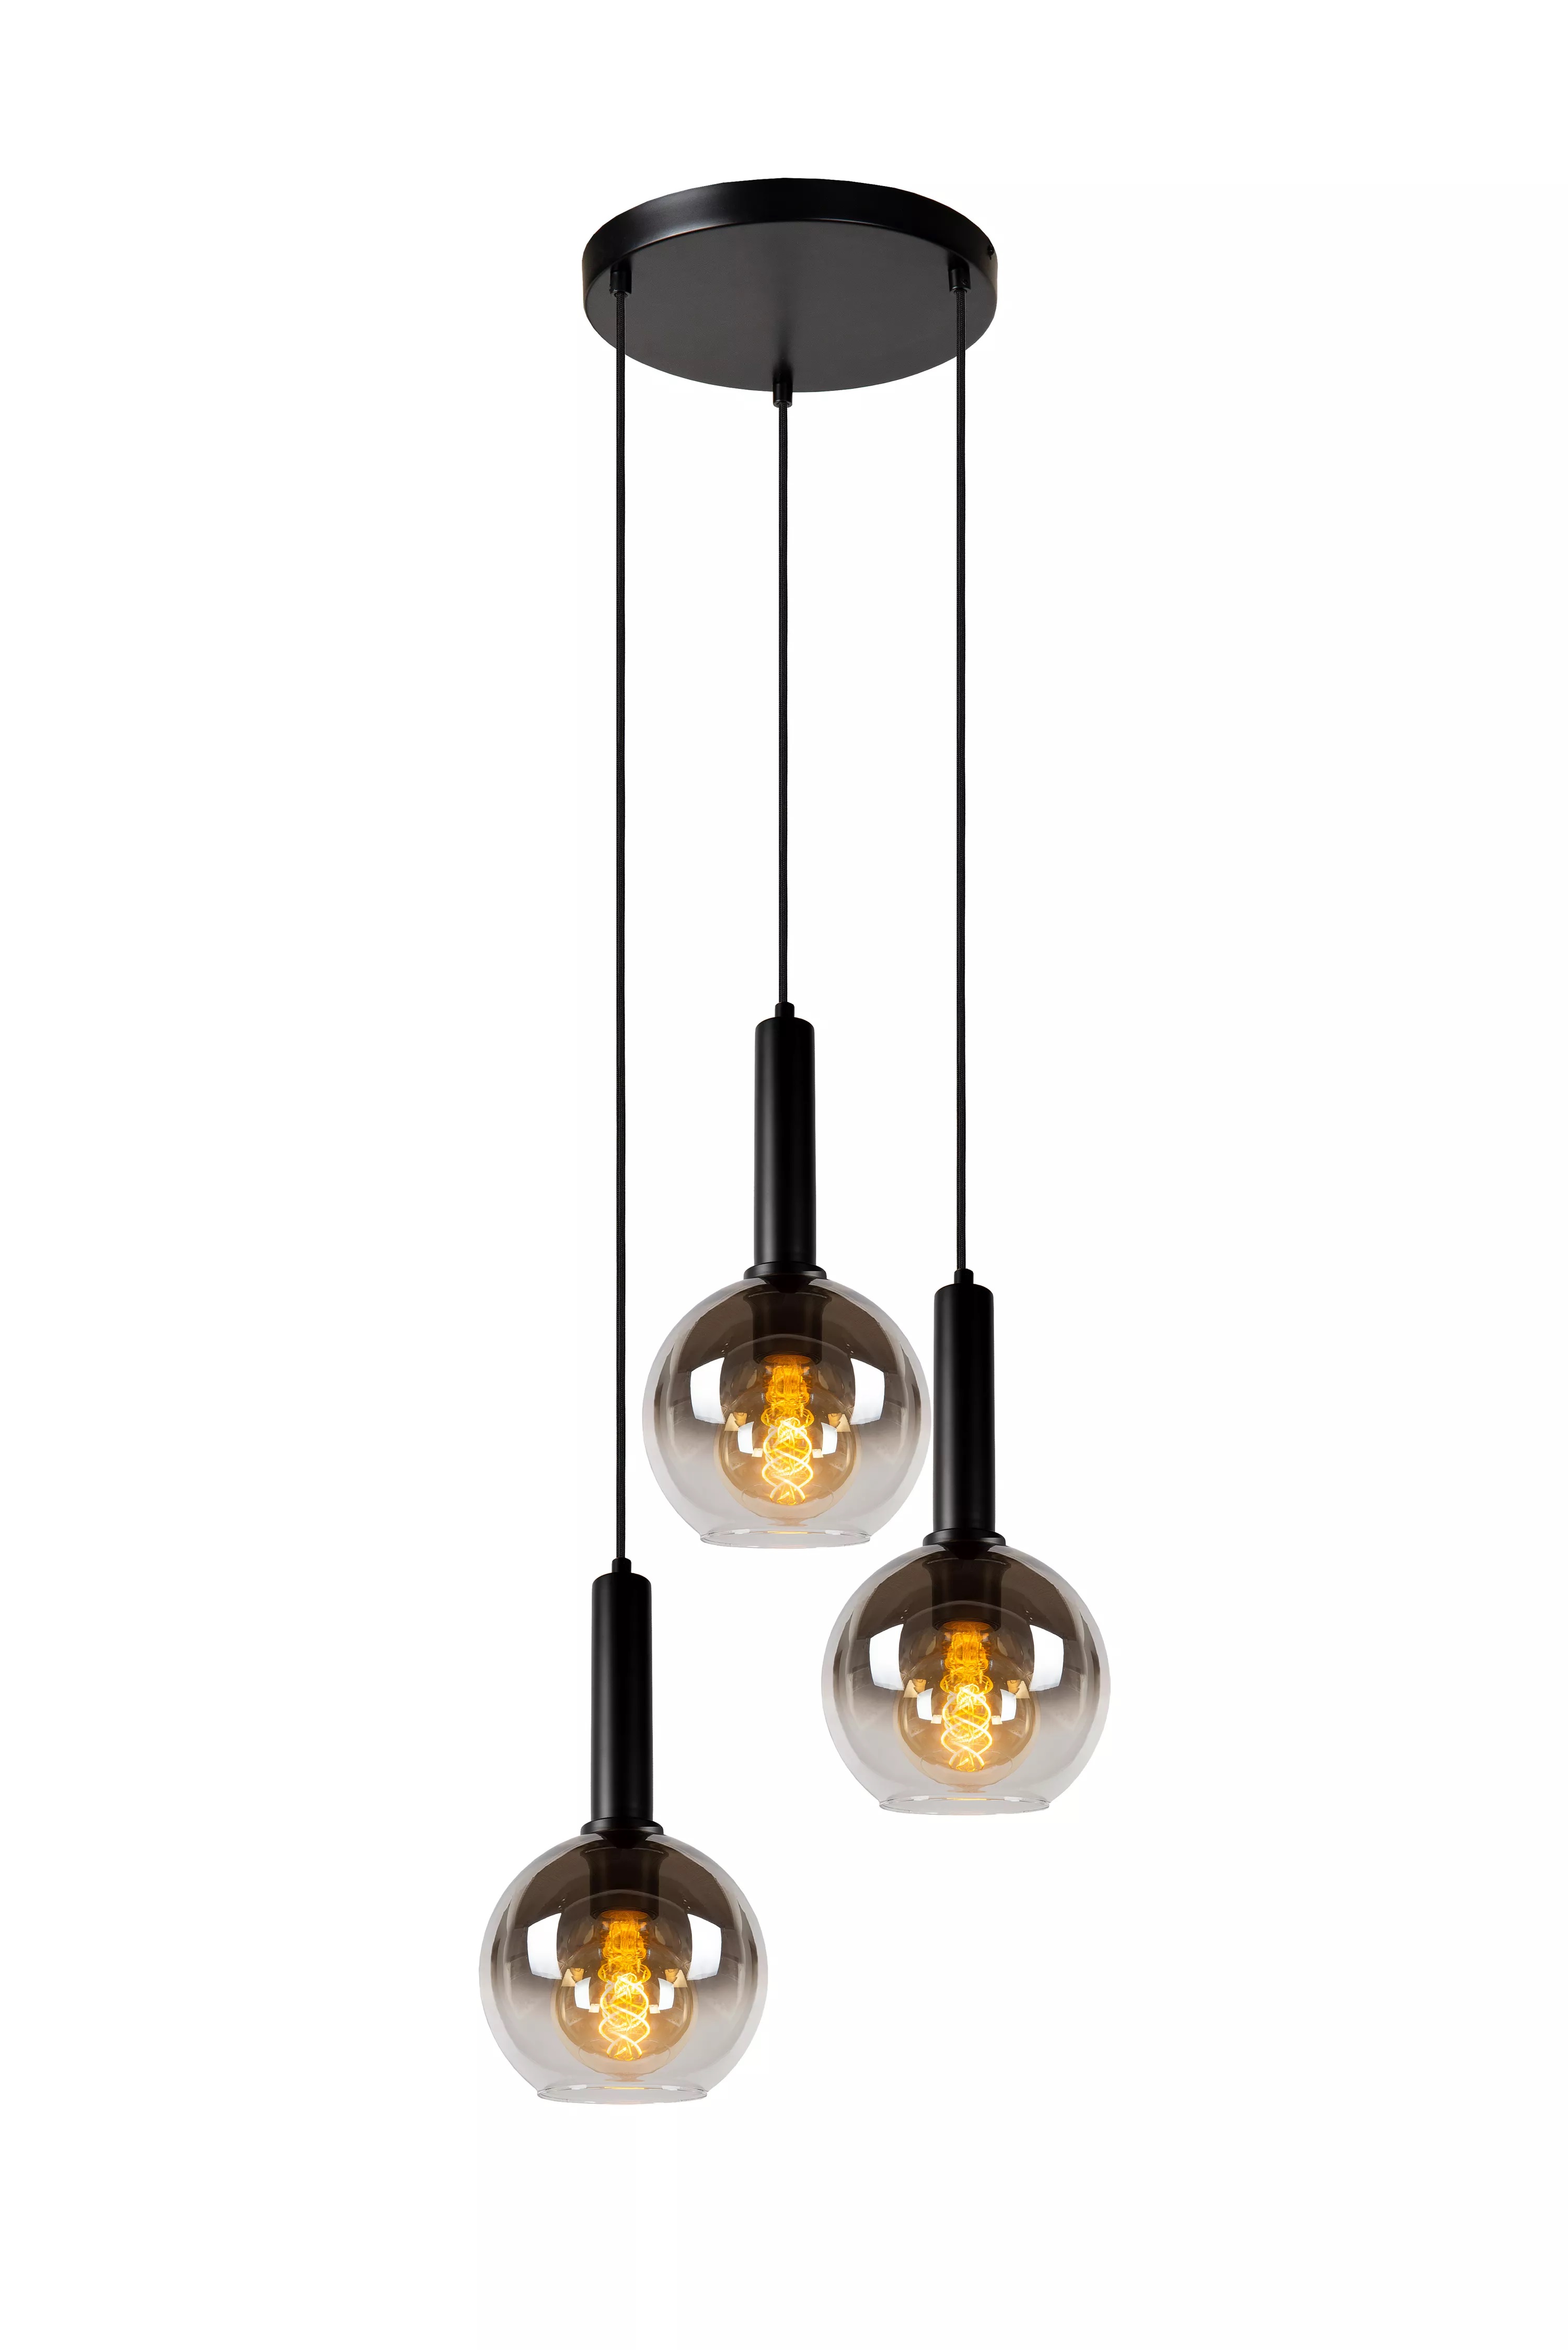 Hanglamp Marius met drie pendels - zwart fumé